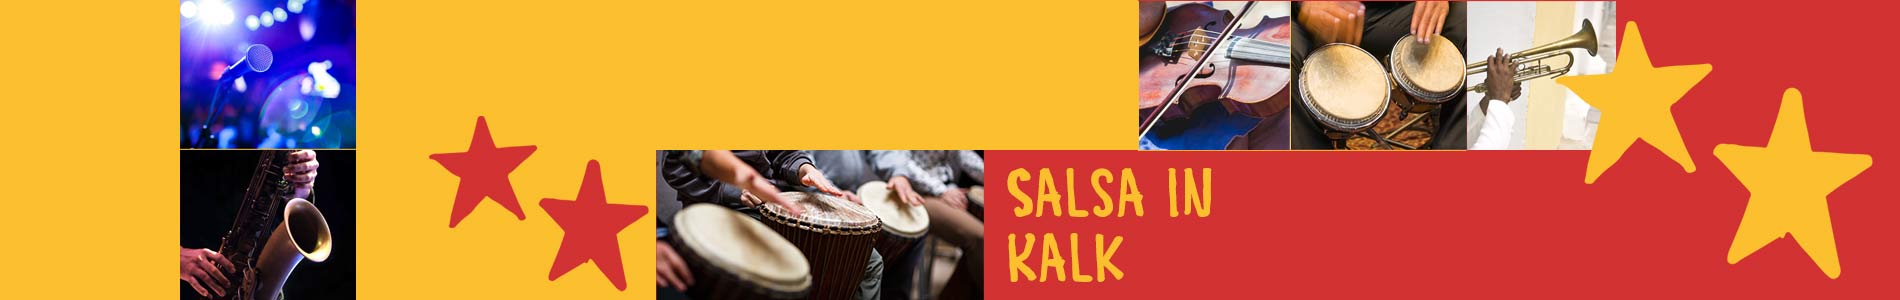 Salsa in Kalk – Salsa lernen und tanzen, Tanzkurse, Partys, Veranstaltungen